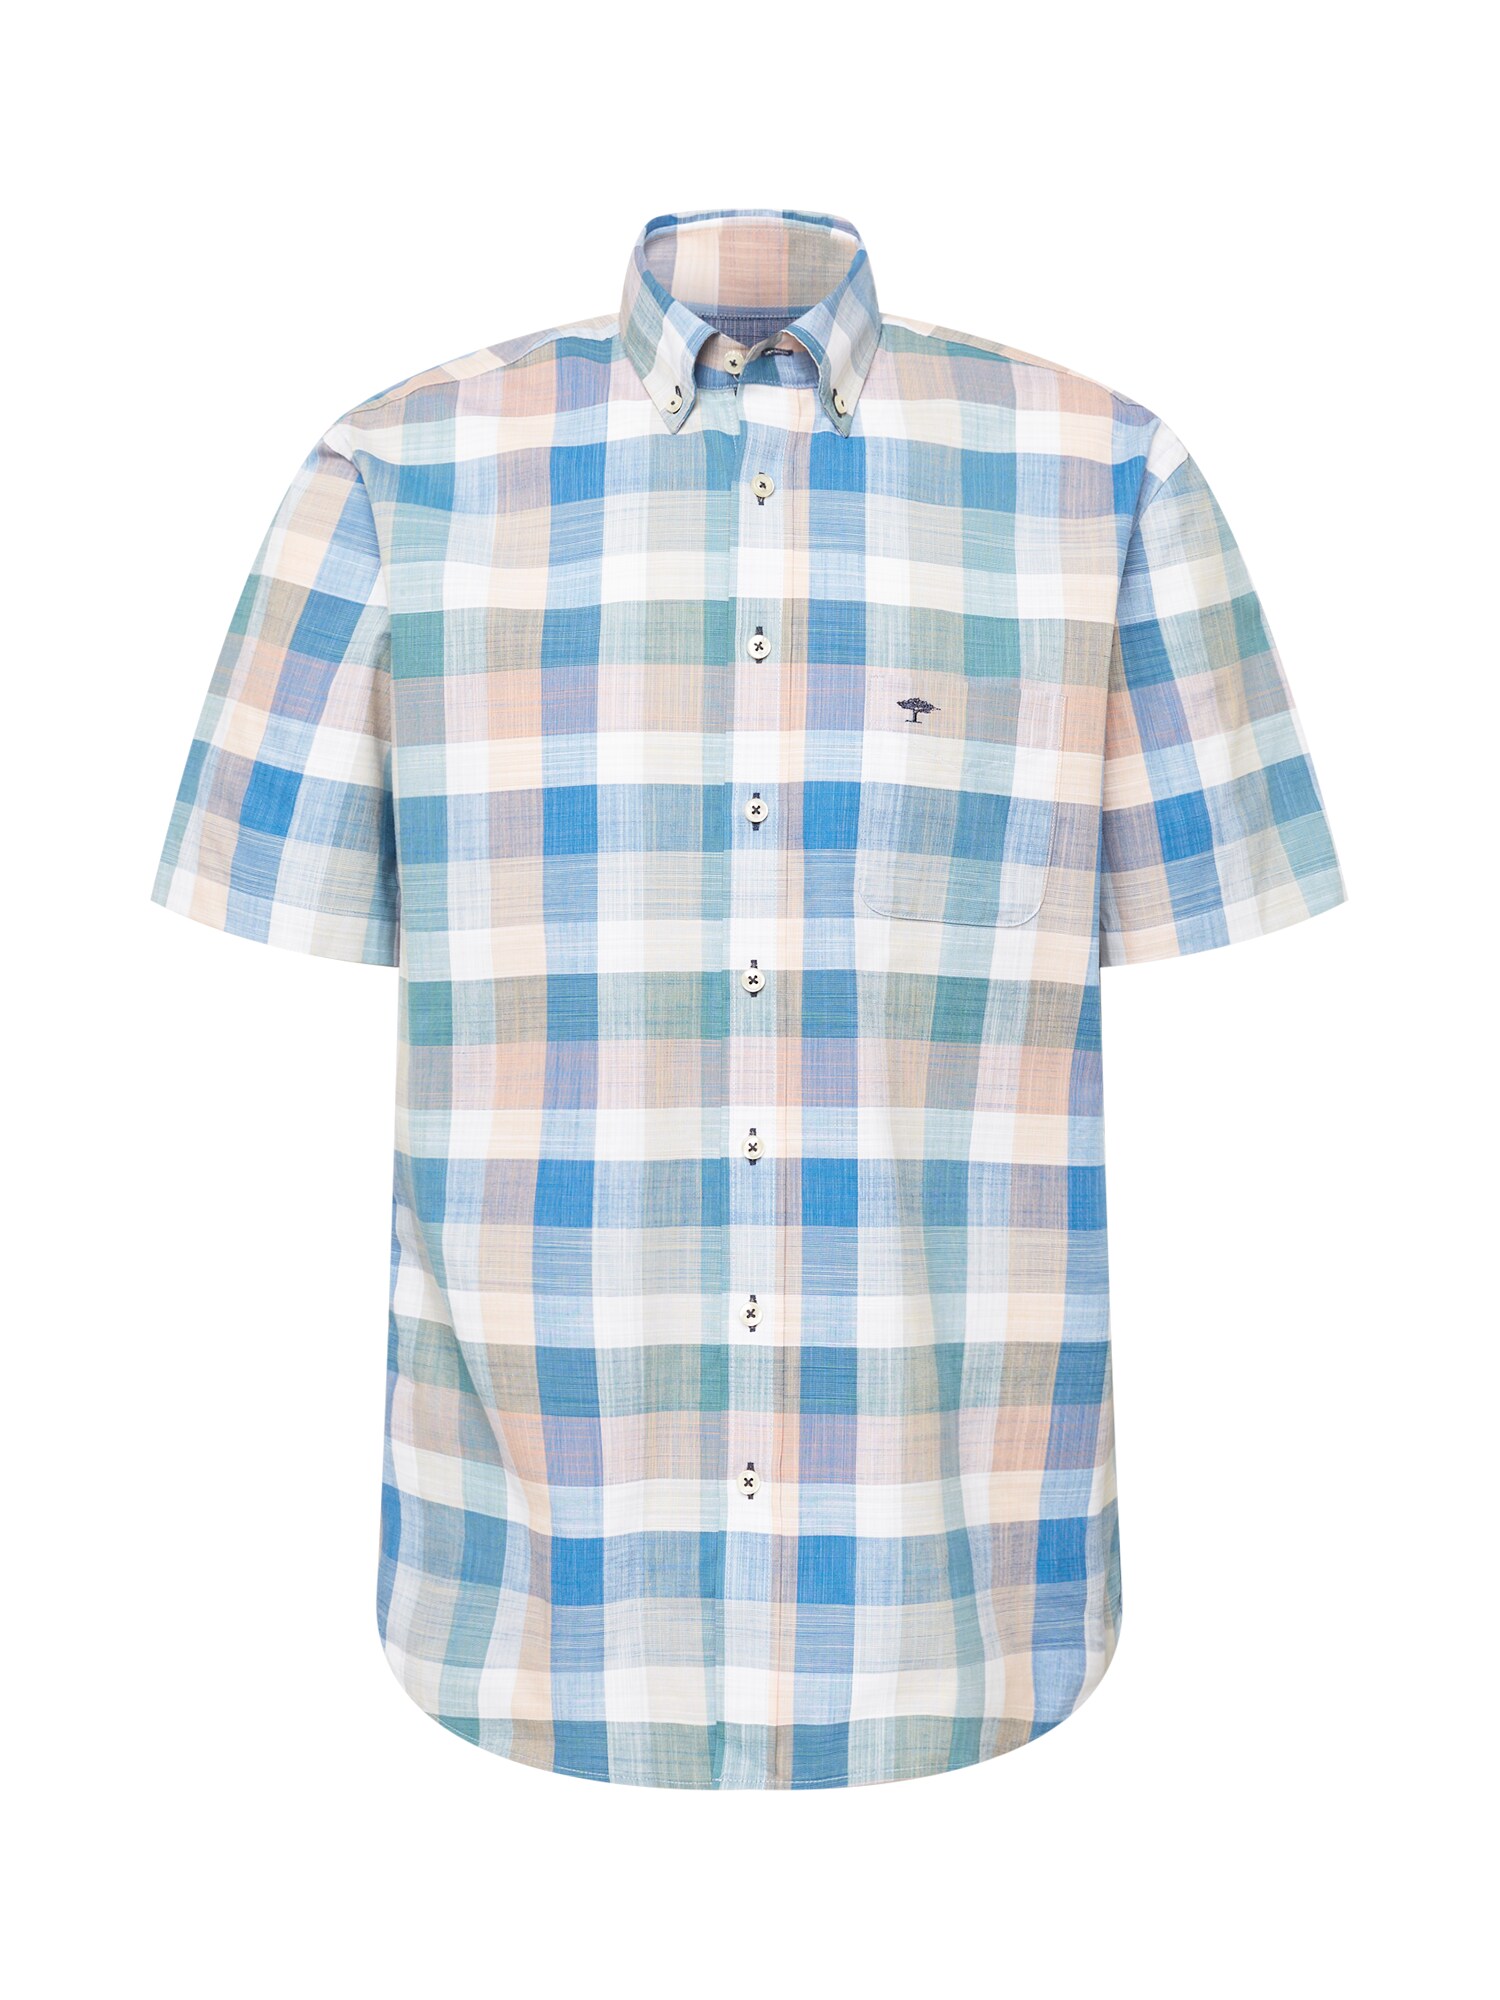 FYNCH-HATTON Marškiniai smėlio spalva / dangaus žydra / šviesiai mėlyna / mišrios spalvos / balta